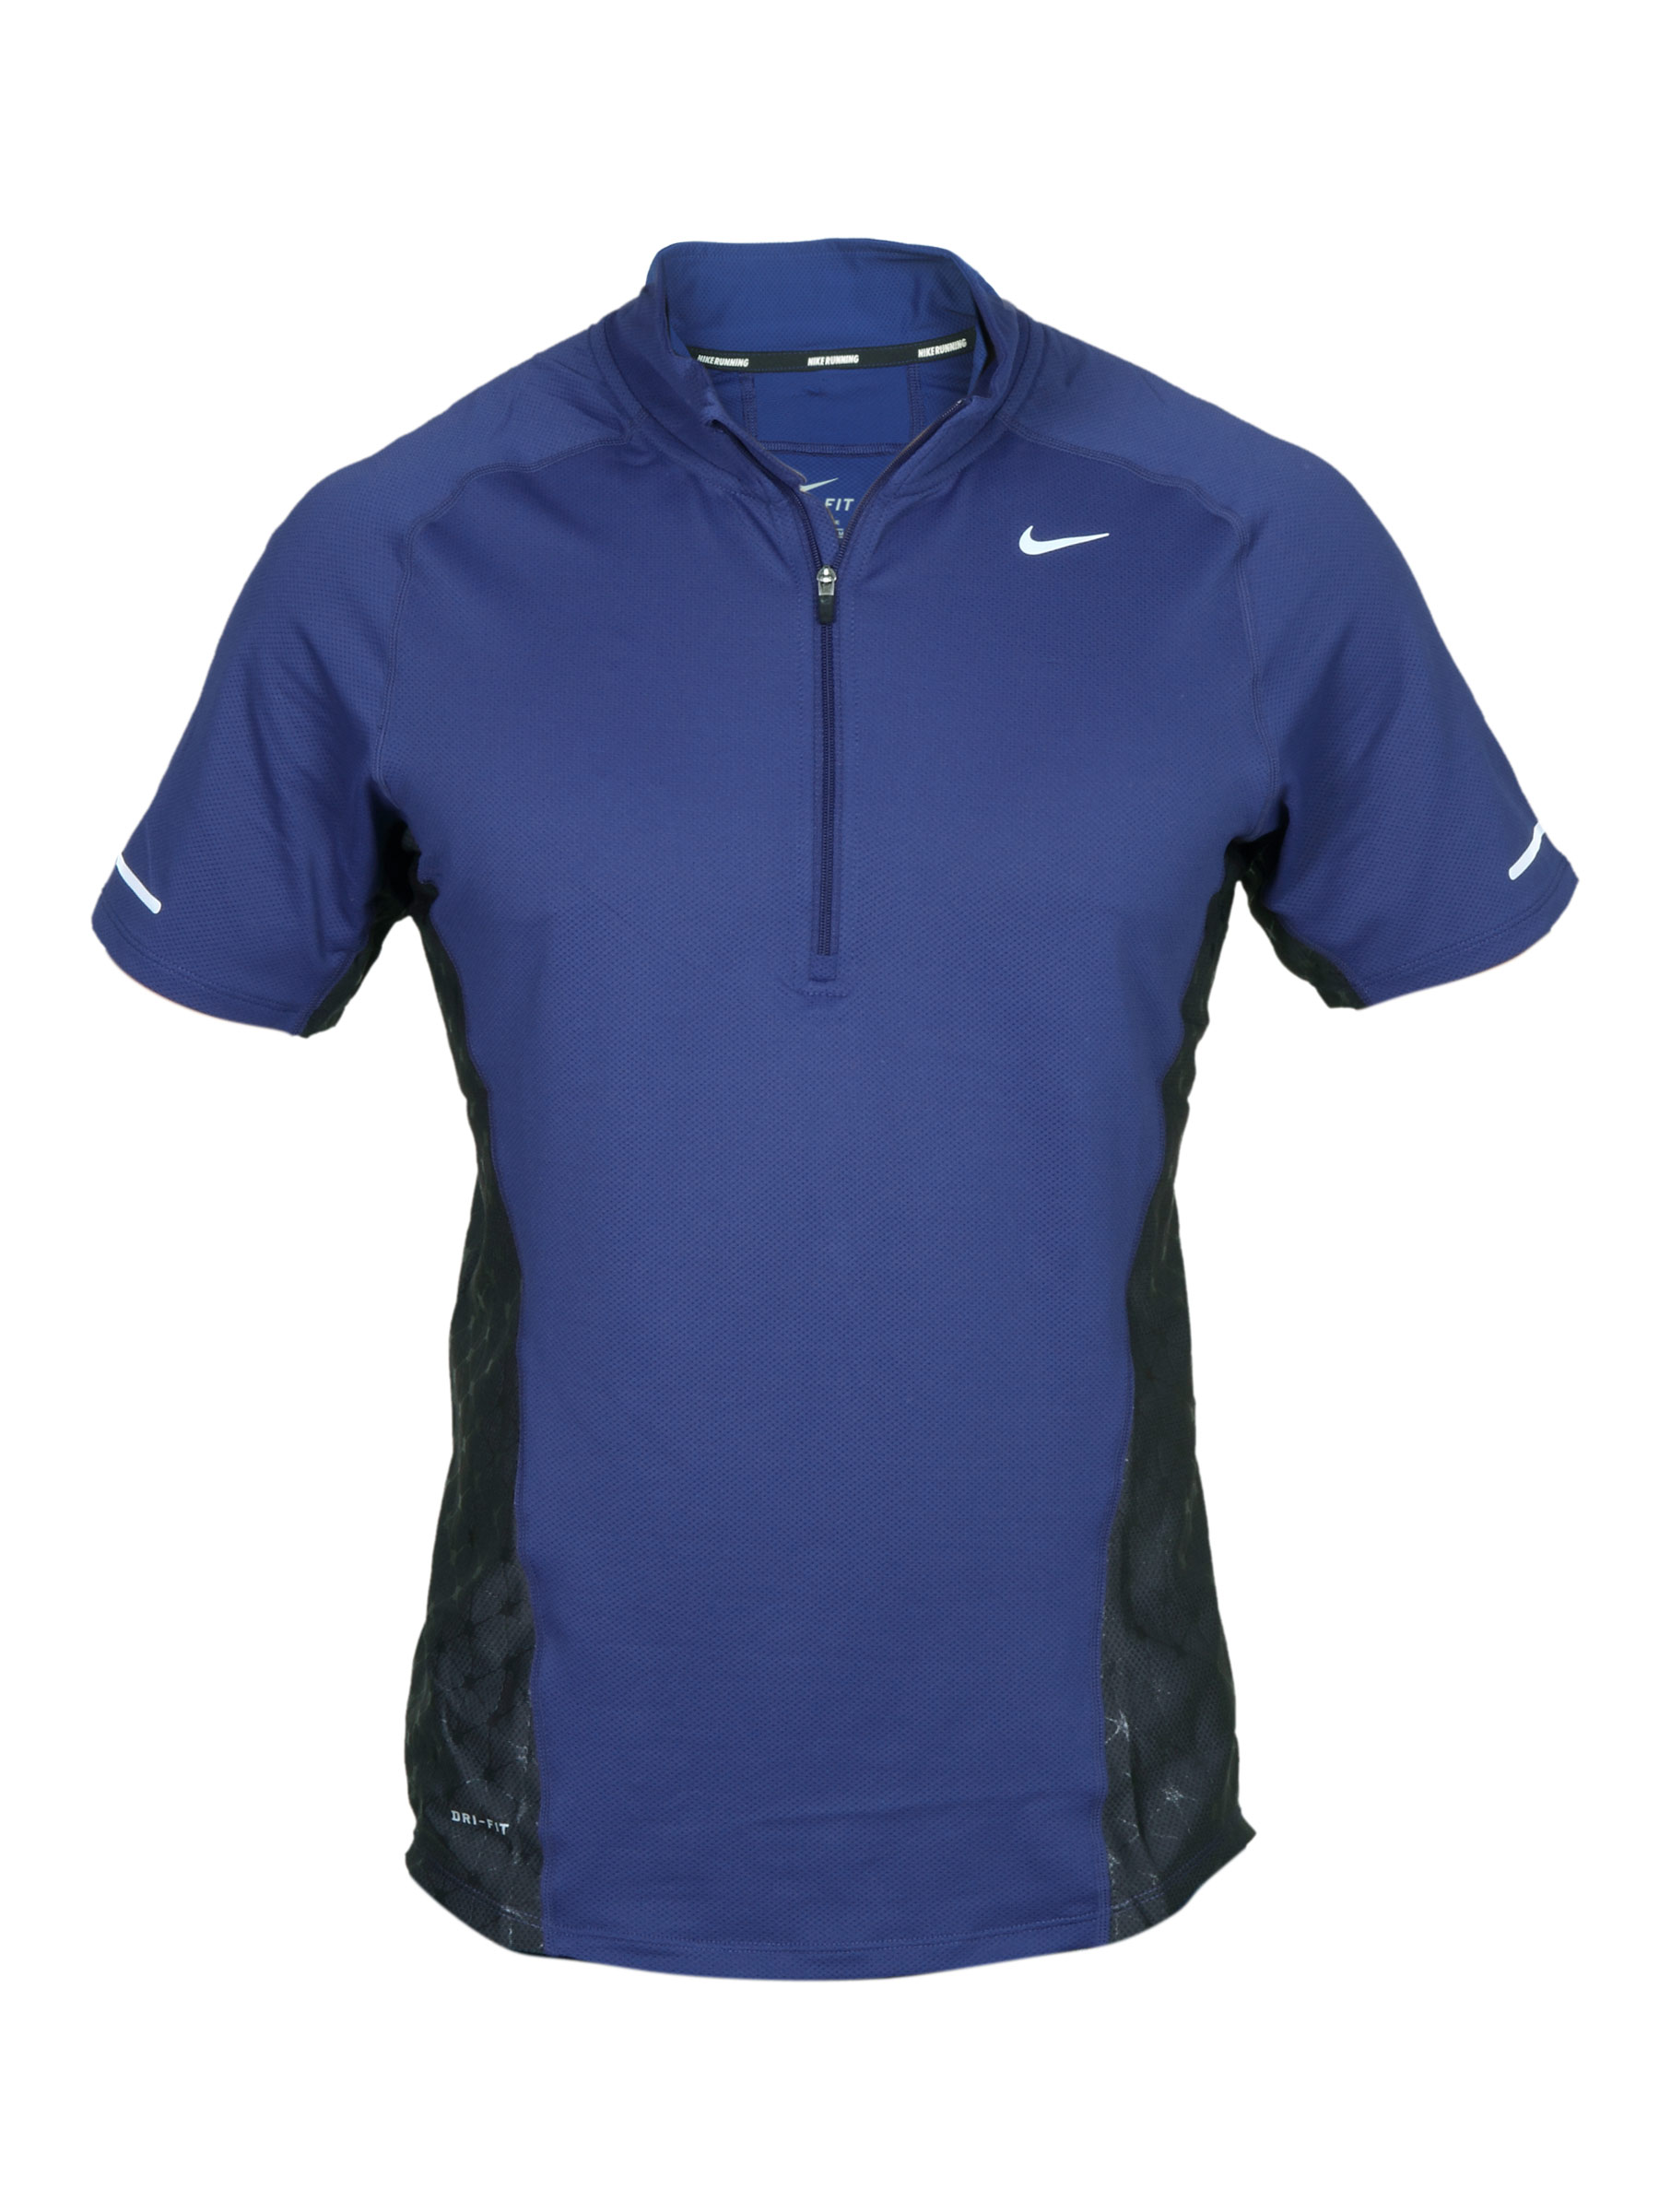 Nike Men's As Spher Navy Blue T-shirt